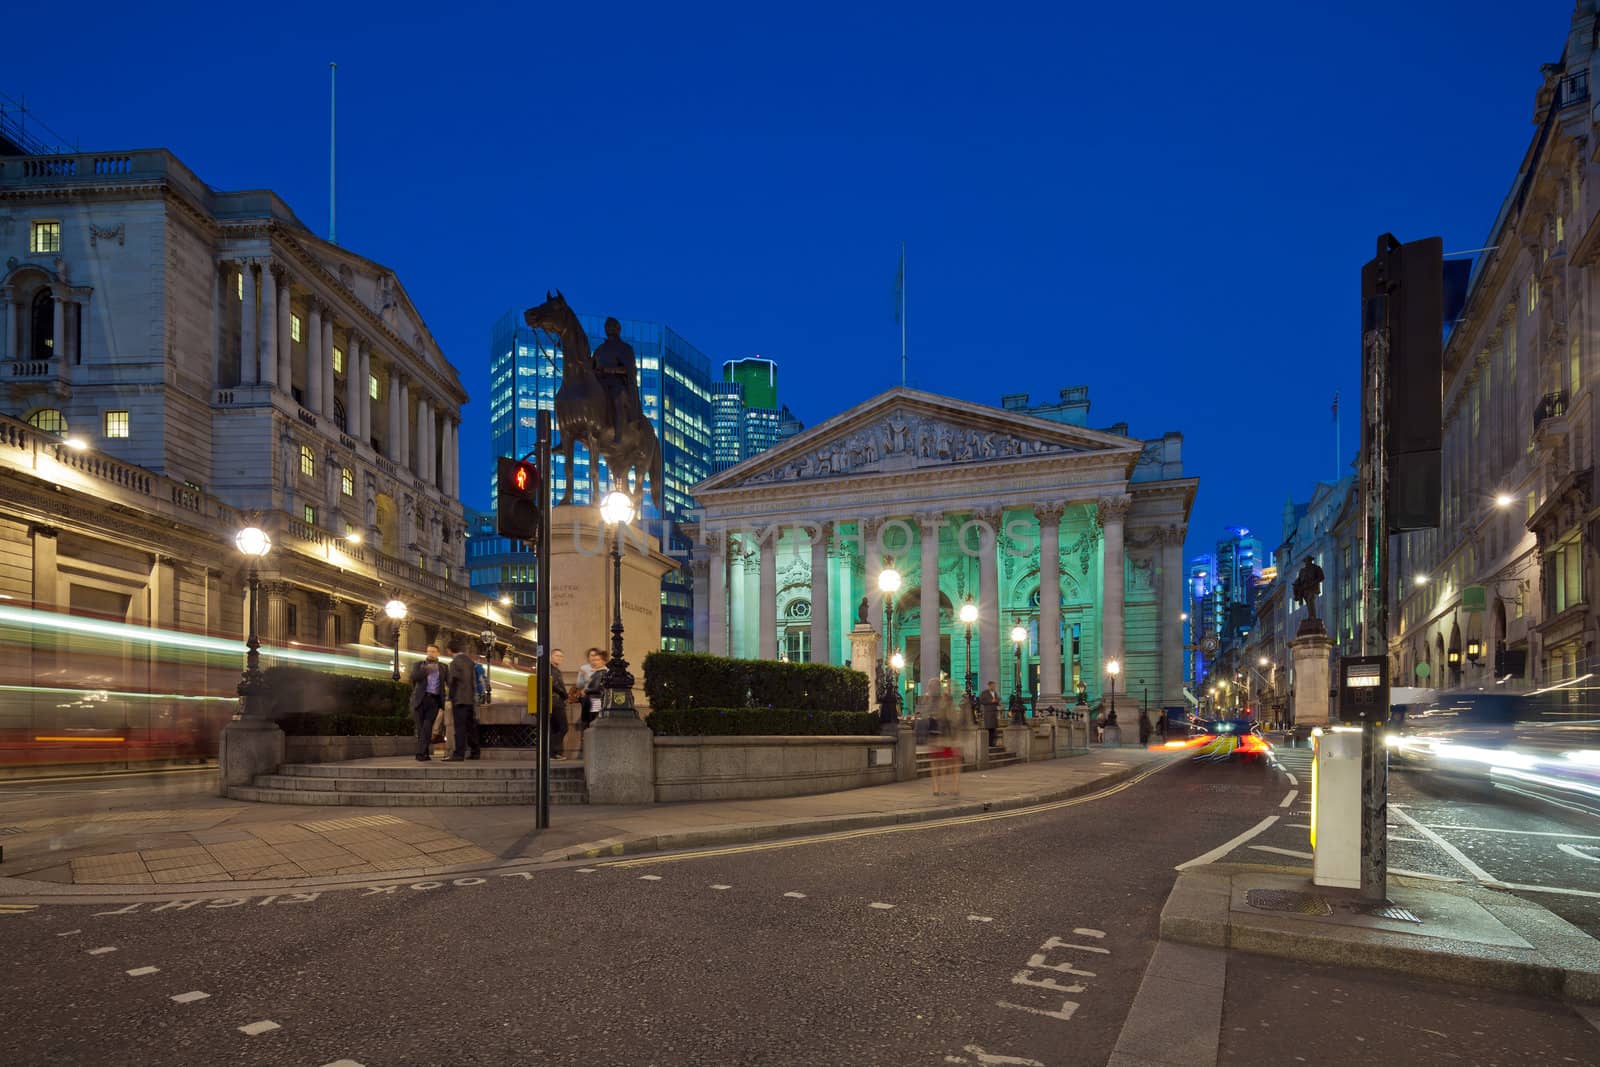 The Royal Stock Exchange, London, England, UK  by Antartis